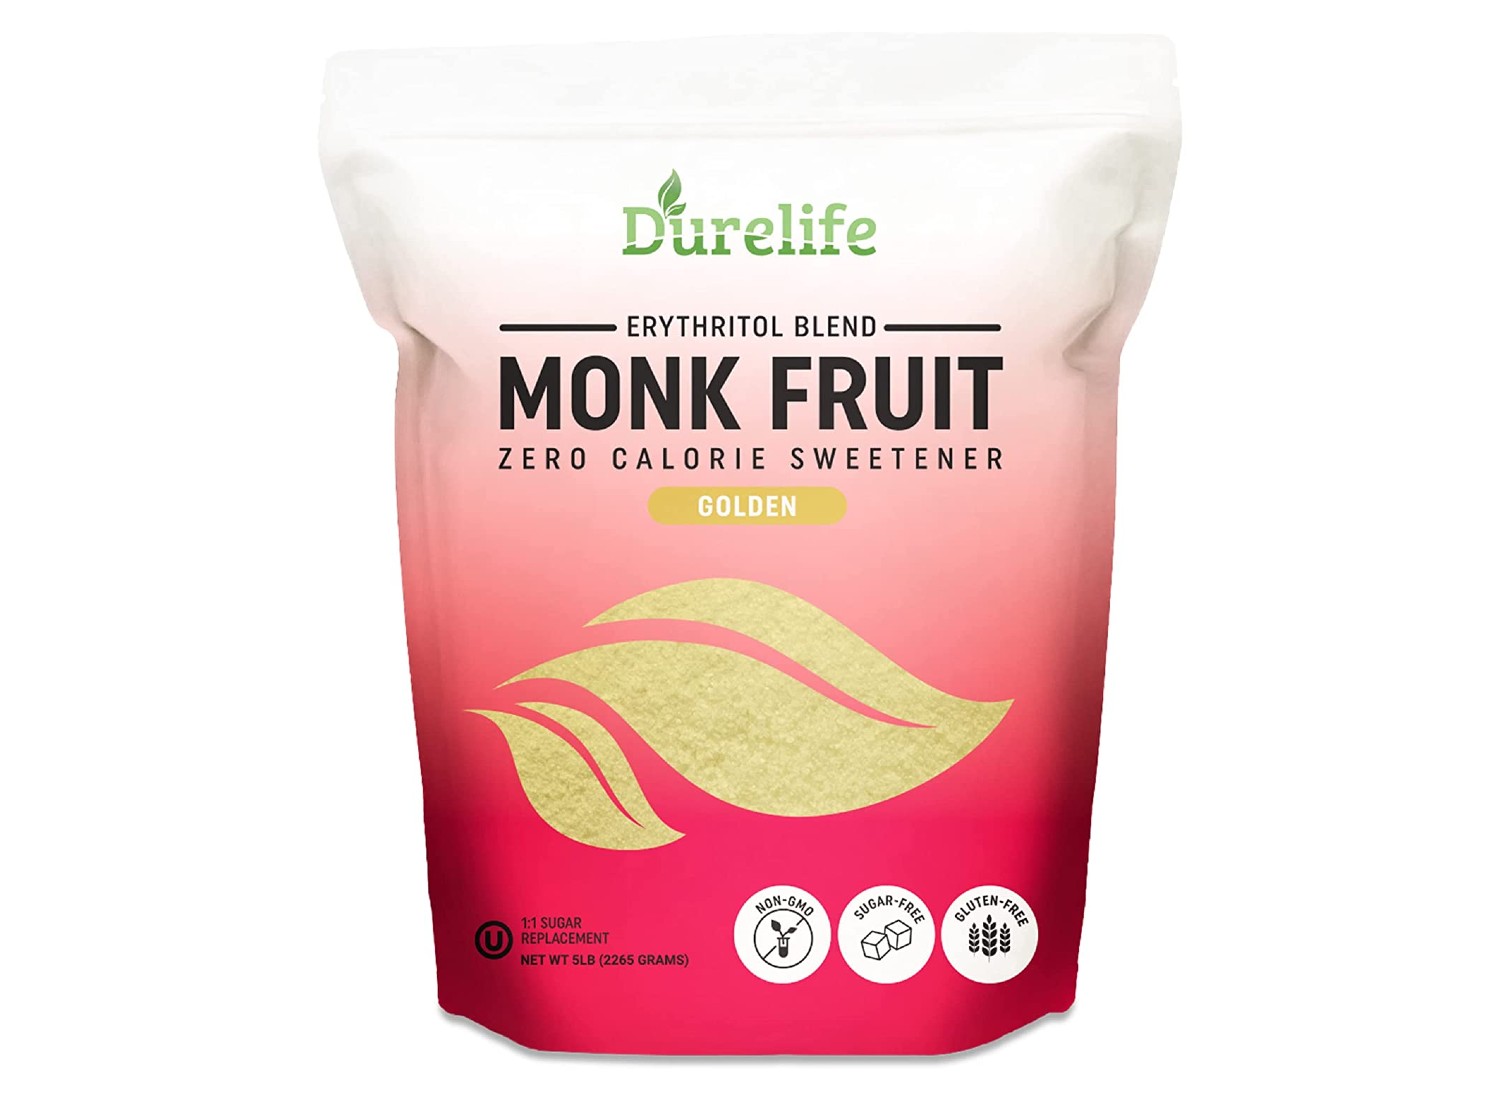 best durelife golden monk fruit sweetener